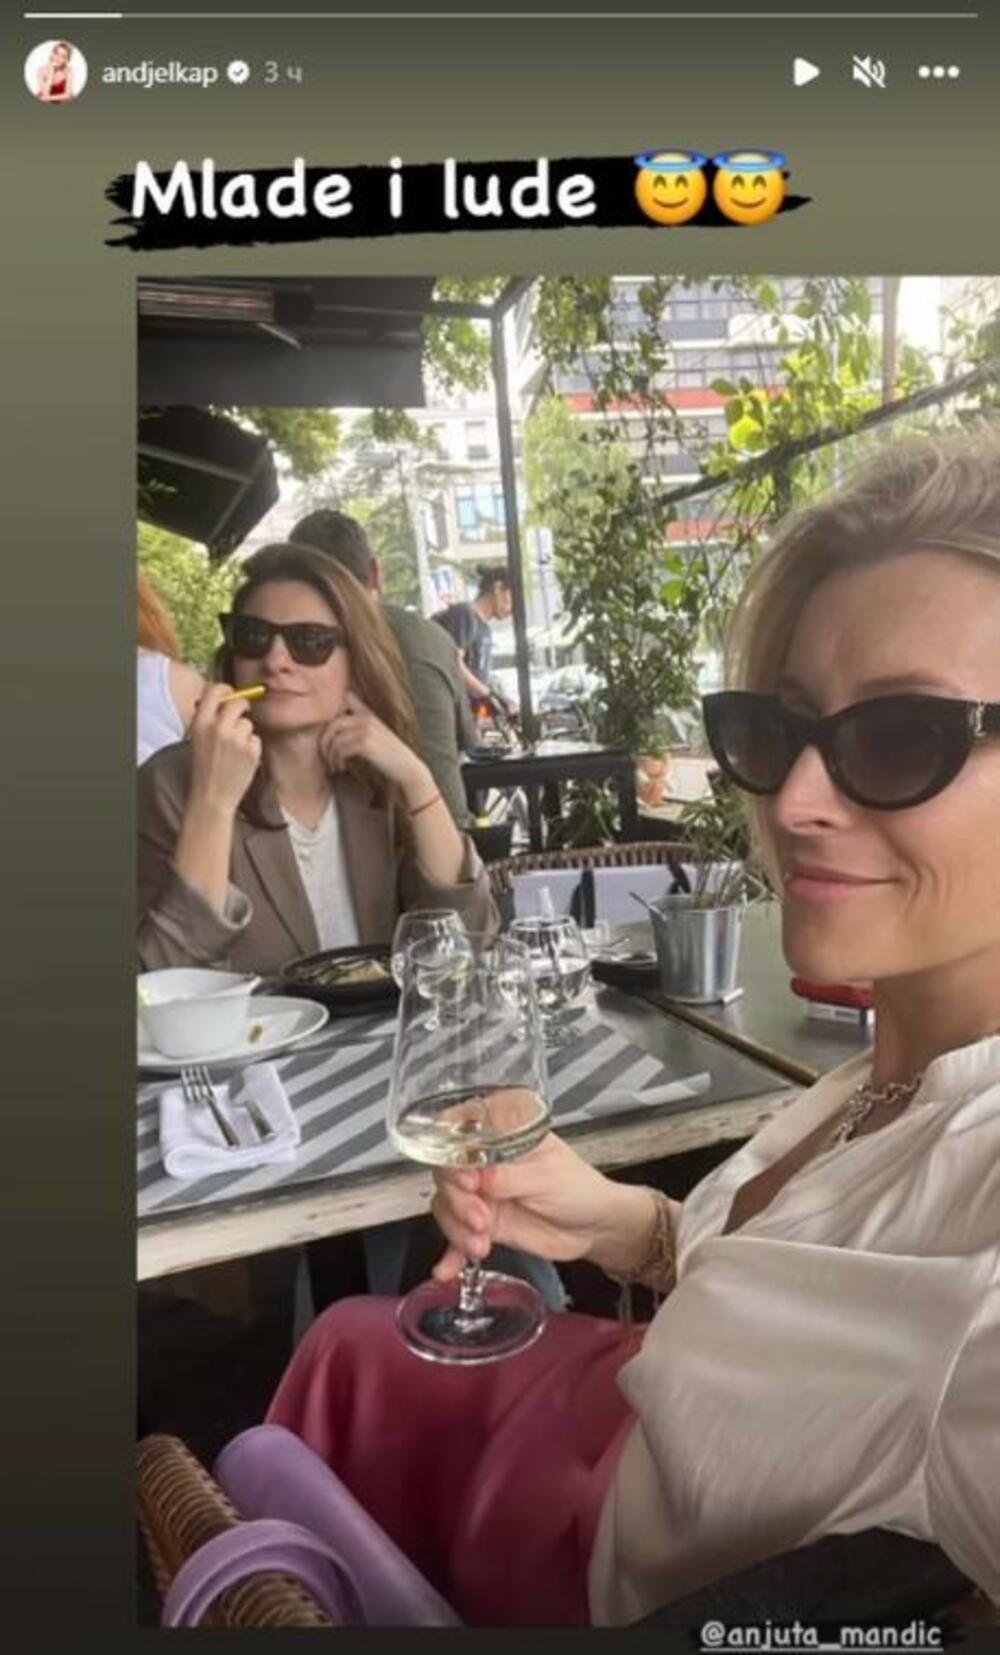 Naime, ona je rešila da malo odmori pa je izašla u kafić sa prijateljicom i glumicom Anjom Mandić.